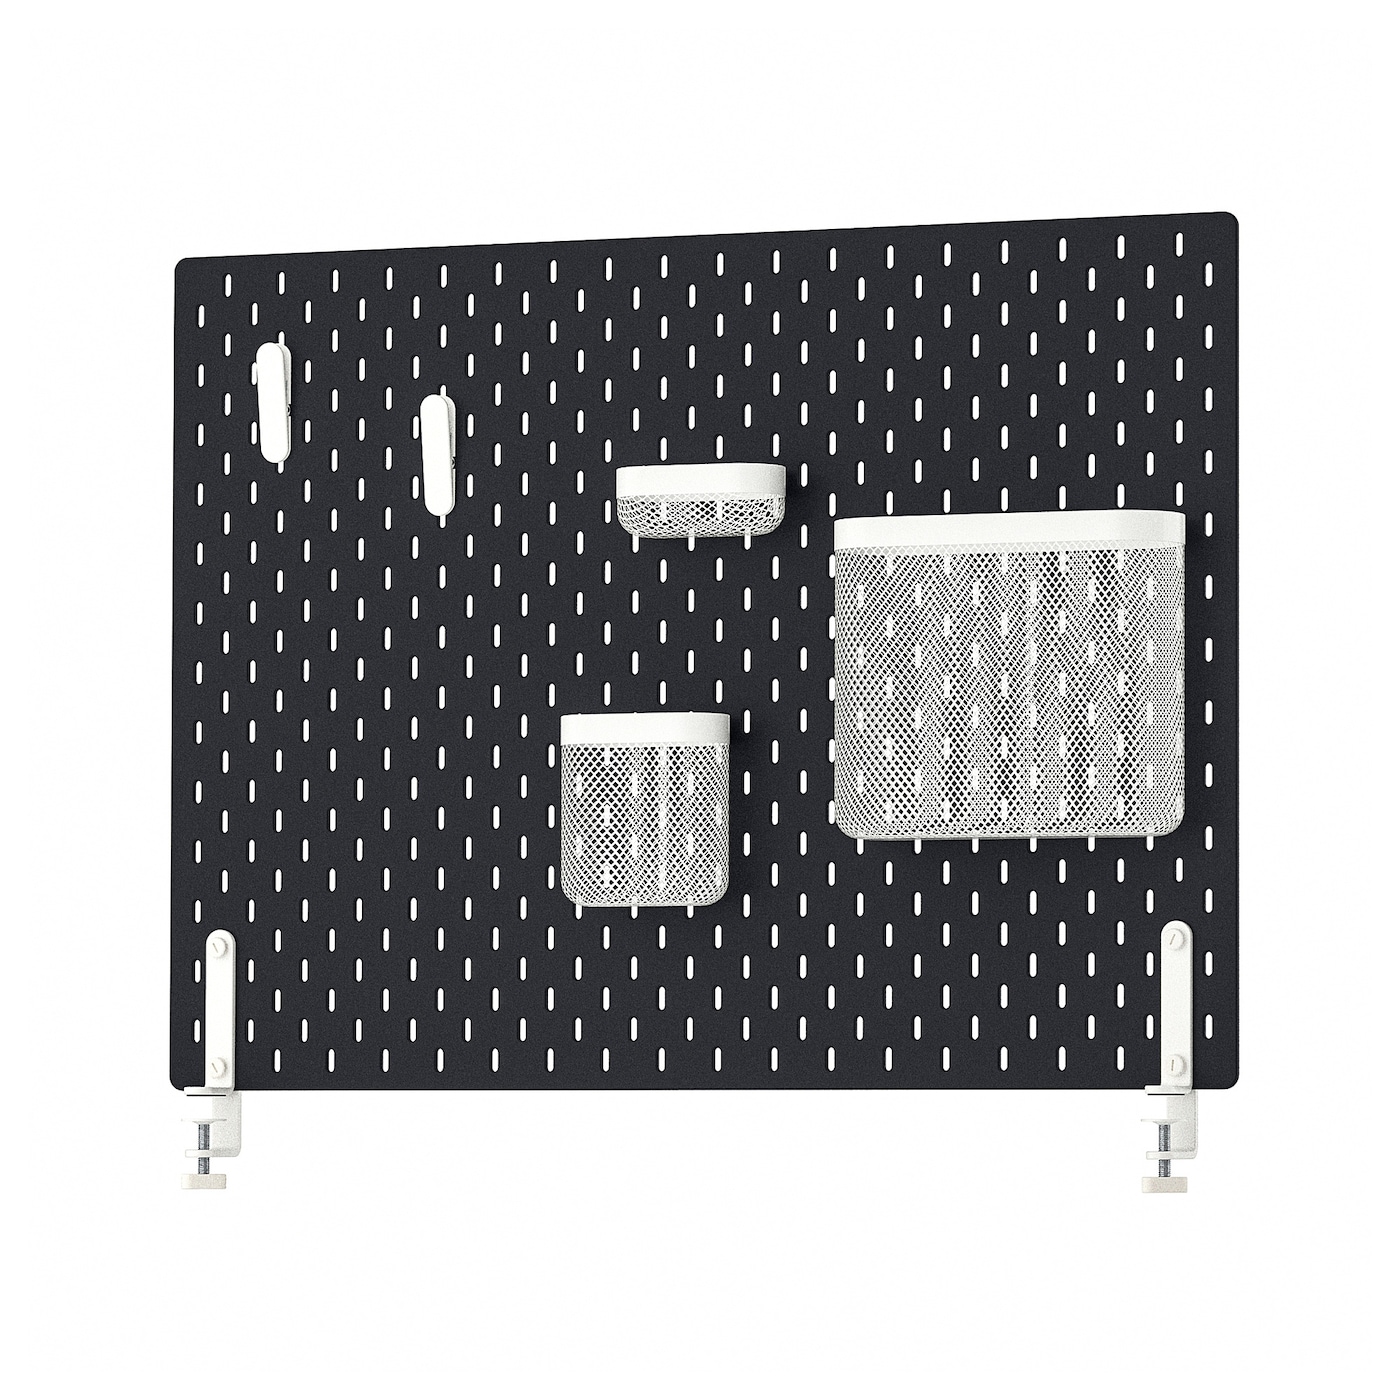 Комбинированная перфорированная доска  - SKÅDIS / SKАDIS IKEA/ СКОДИС  ИКЕА,  76х56 см, белый/черный